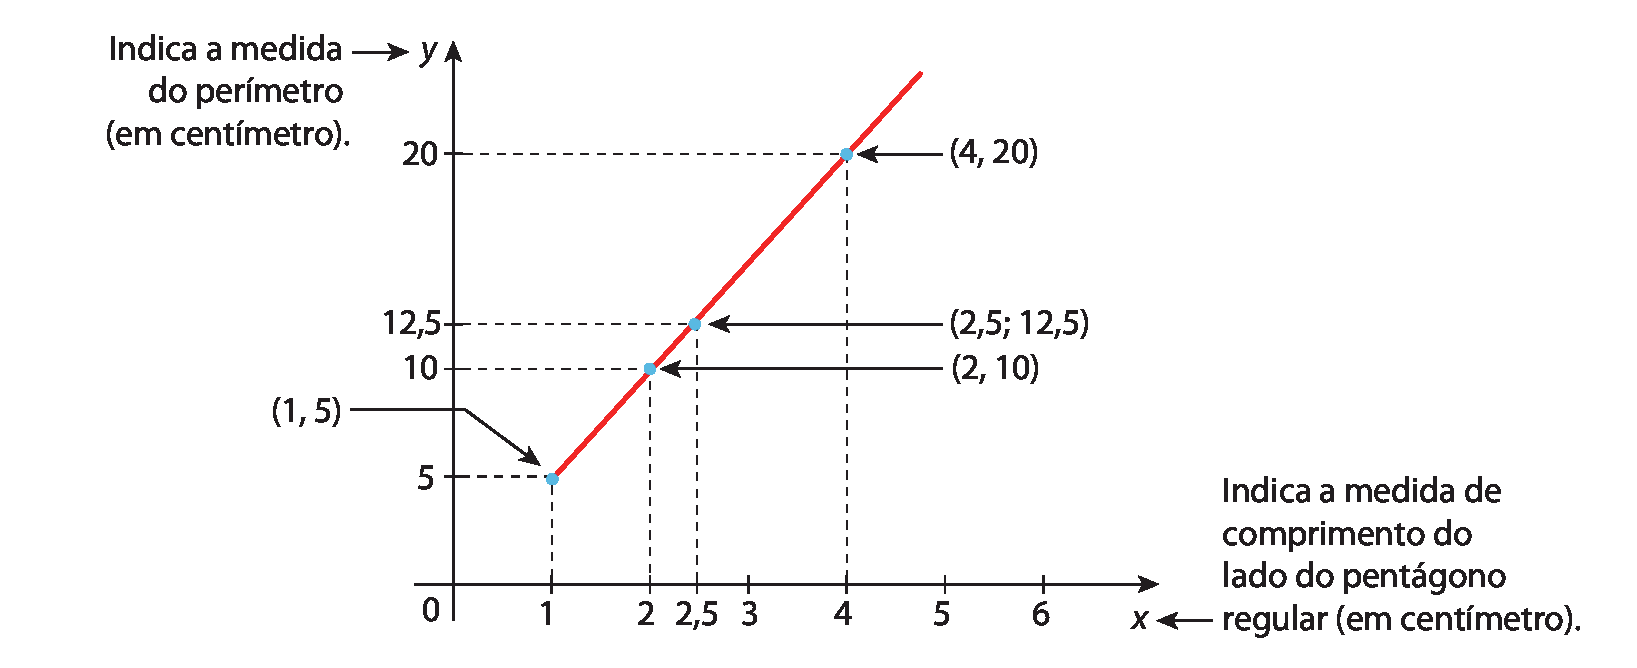 Gráfico. Um eixo horizontal perpendicular a um eixo vertical. 
No eixo horizontal estão indicados os números 0, 1, 2, 2 vírgula 5, 3, 4, 5 e 6 e ele está rotulado como x, com seta para indica a medida de comprimento do lado do pentágono regular (em centímetro).
No eixo vertical estão indicados os números 0, 5, 10, 12 vírgula 5 e 20 e ele está rotulado como y, com seta para indica medida do perímetro (em centímetro).
4 pontos azuis alinhados, estão indicados no plano cartesiano. Um ponto tem uma linha tracejada na vertical até o número 1 no eixo x, e outra linha tracejada na horizontal até o número 5 no eixo y, indicação das coordenadas (1, 5).
Outro ponto tem uma linha tracejada na vertical até o número 2 no eixo x, e outra linha tracejada na horizontal até o número 10 no eixo y, indicação das coordenadas (2, 10).
Outro ponto tem uma linha tracejada na vertical até o número 2 vírgula 5 no eixo x, e outra linha tracejada na horizontal até o número 12 vírgula 5 no eixo y, indicação das coordenadas (2 vírgula 5; 12 vírgula 5).
Outro ponto tem uma linha tracejada na vertical até o número 4 no eixo x, e outra linha tracejada na horizontal até o número 20 no eixo y, indicação das coordenadas (4, 20).
Linha contínua vermelha que inicia no ponto (1, 5) e passa pelos outros três pontos.